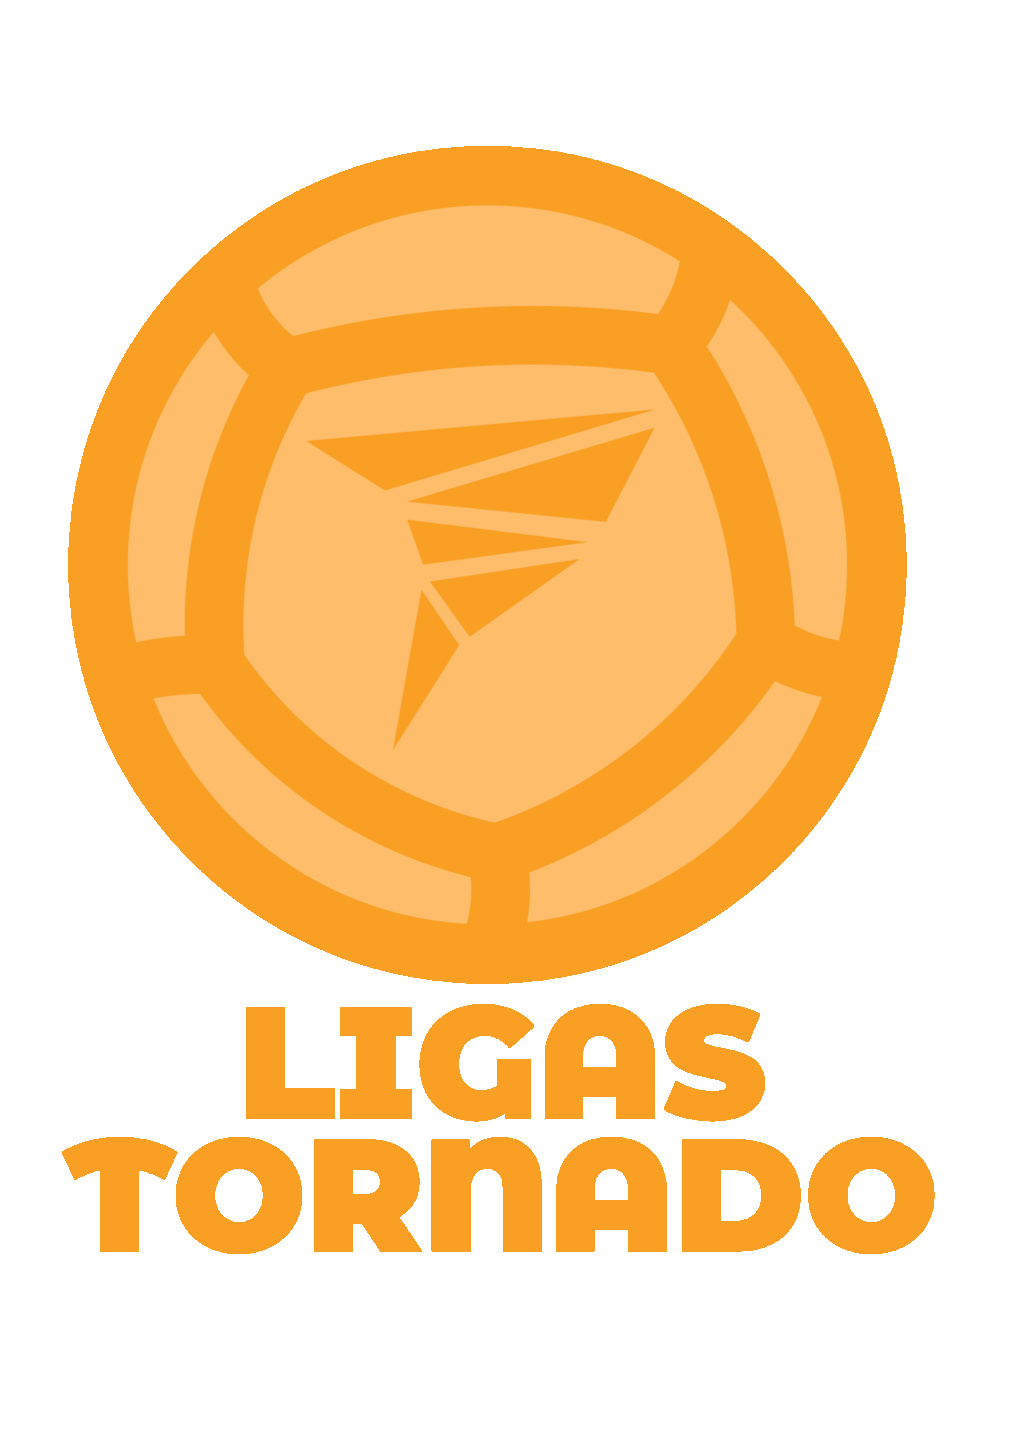 Votación de Propuestas Logo Ligas Tornado Propue10